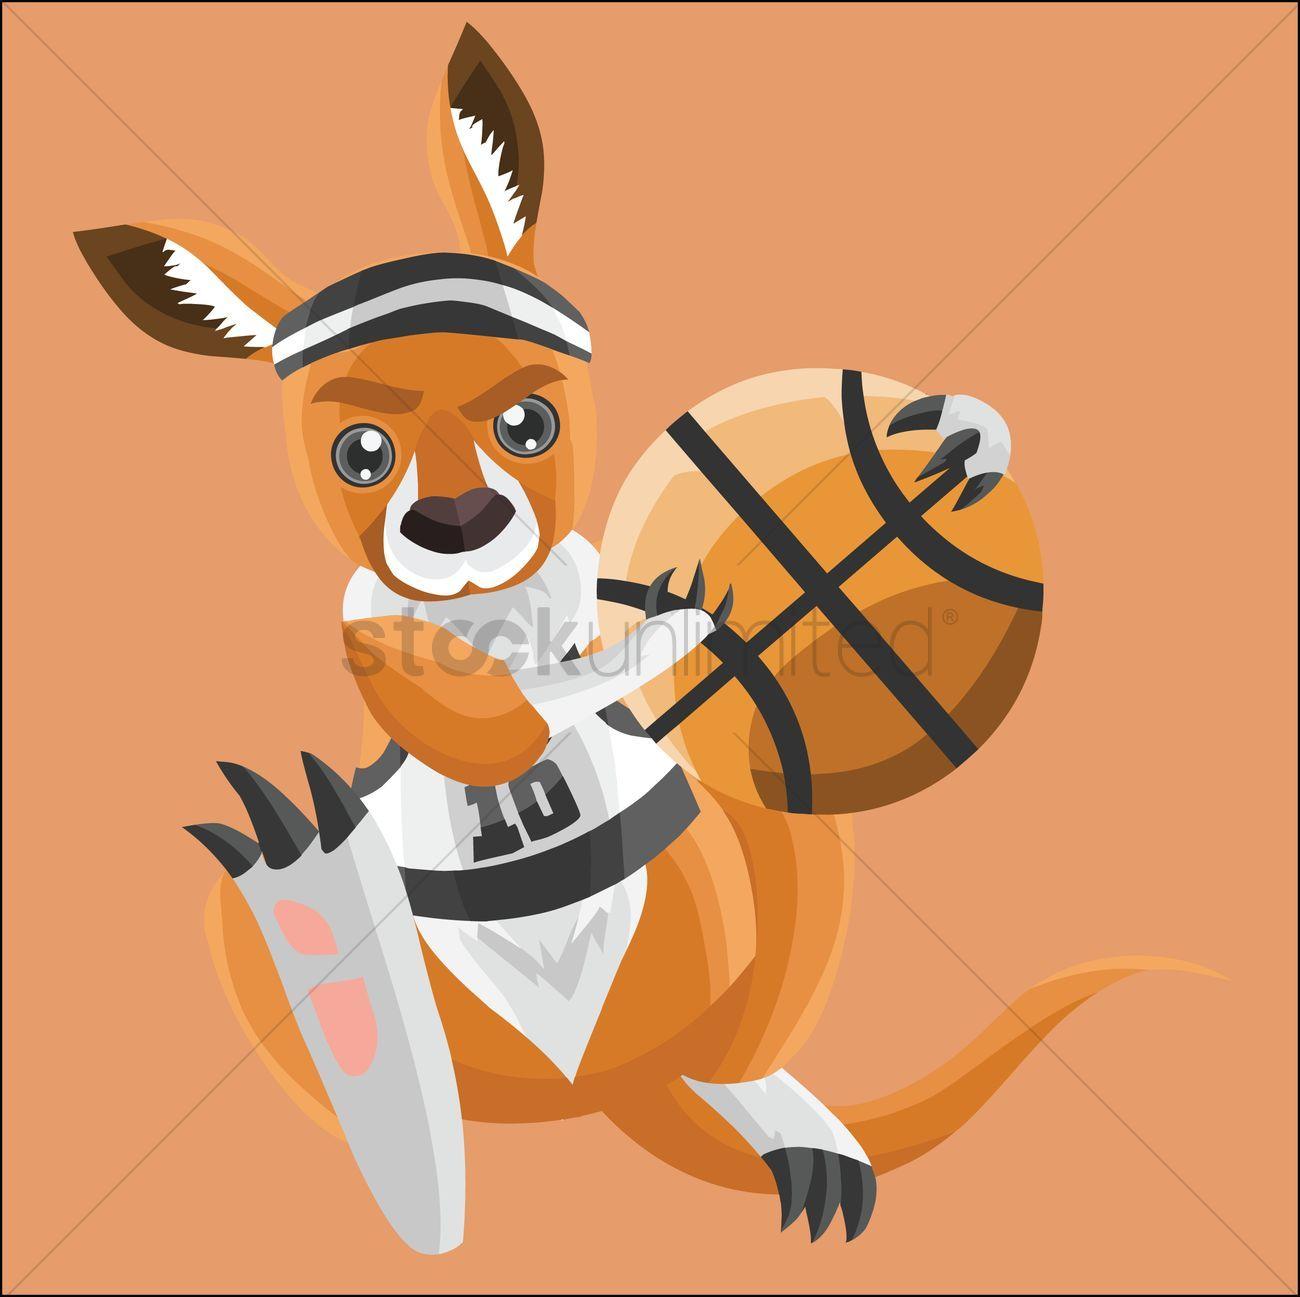 Kangaroos Basketball Logo - Kangaroo as a basketball player on peach background Vector Image